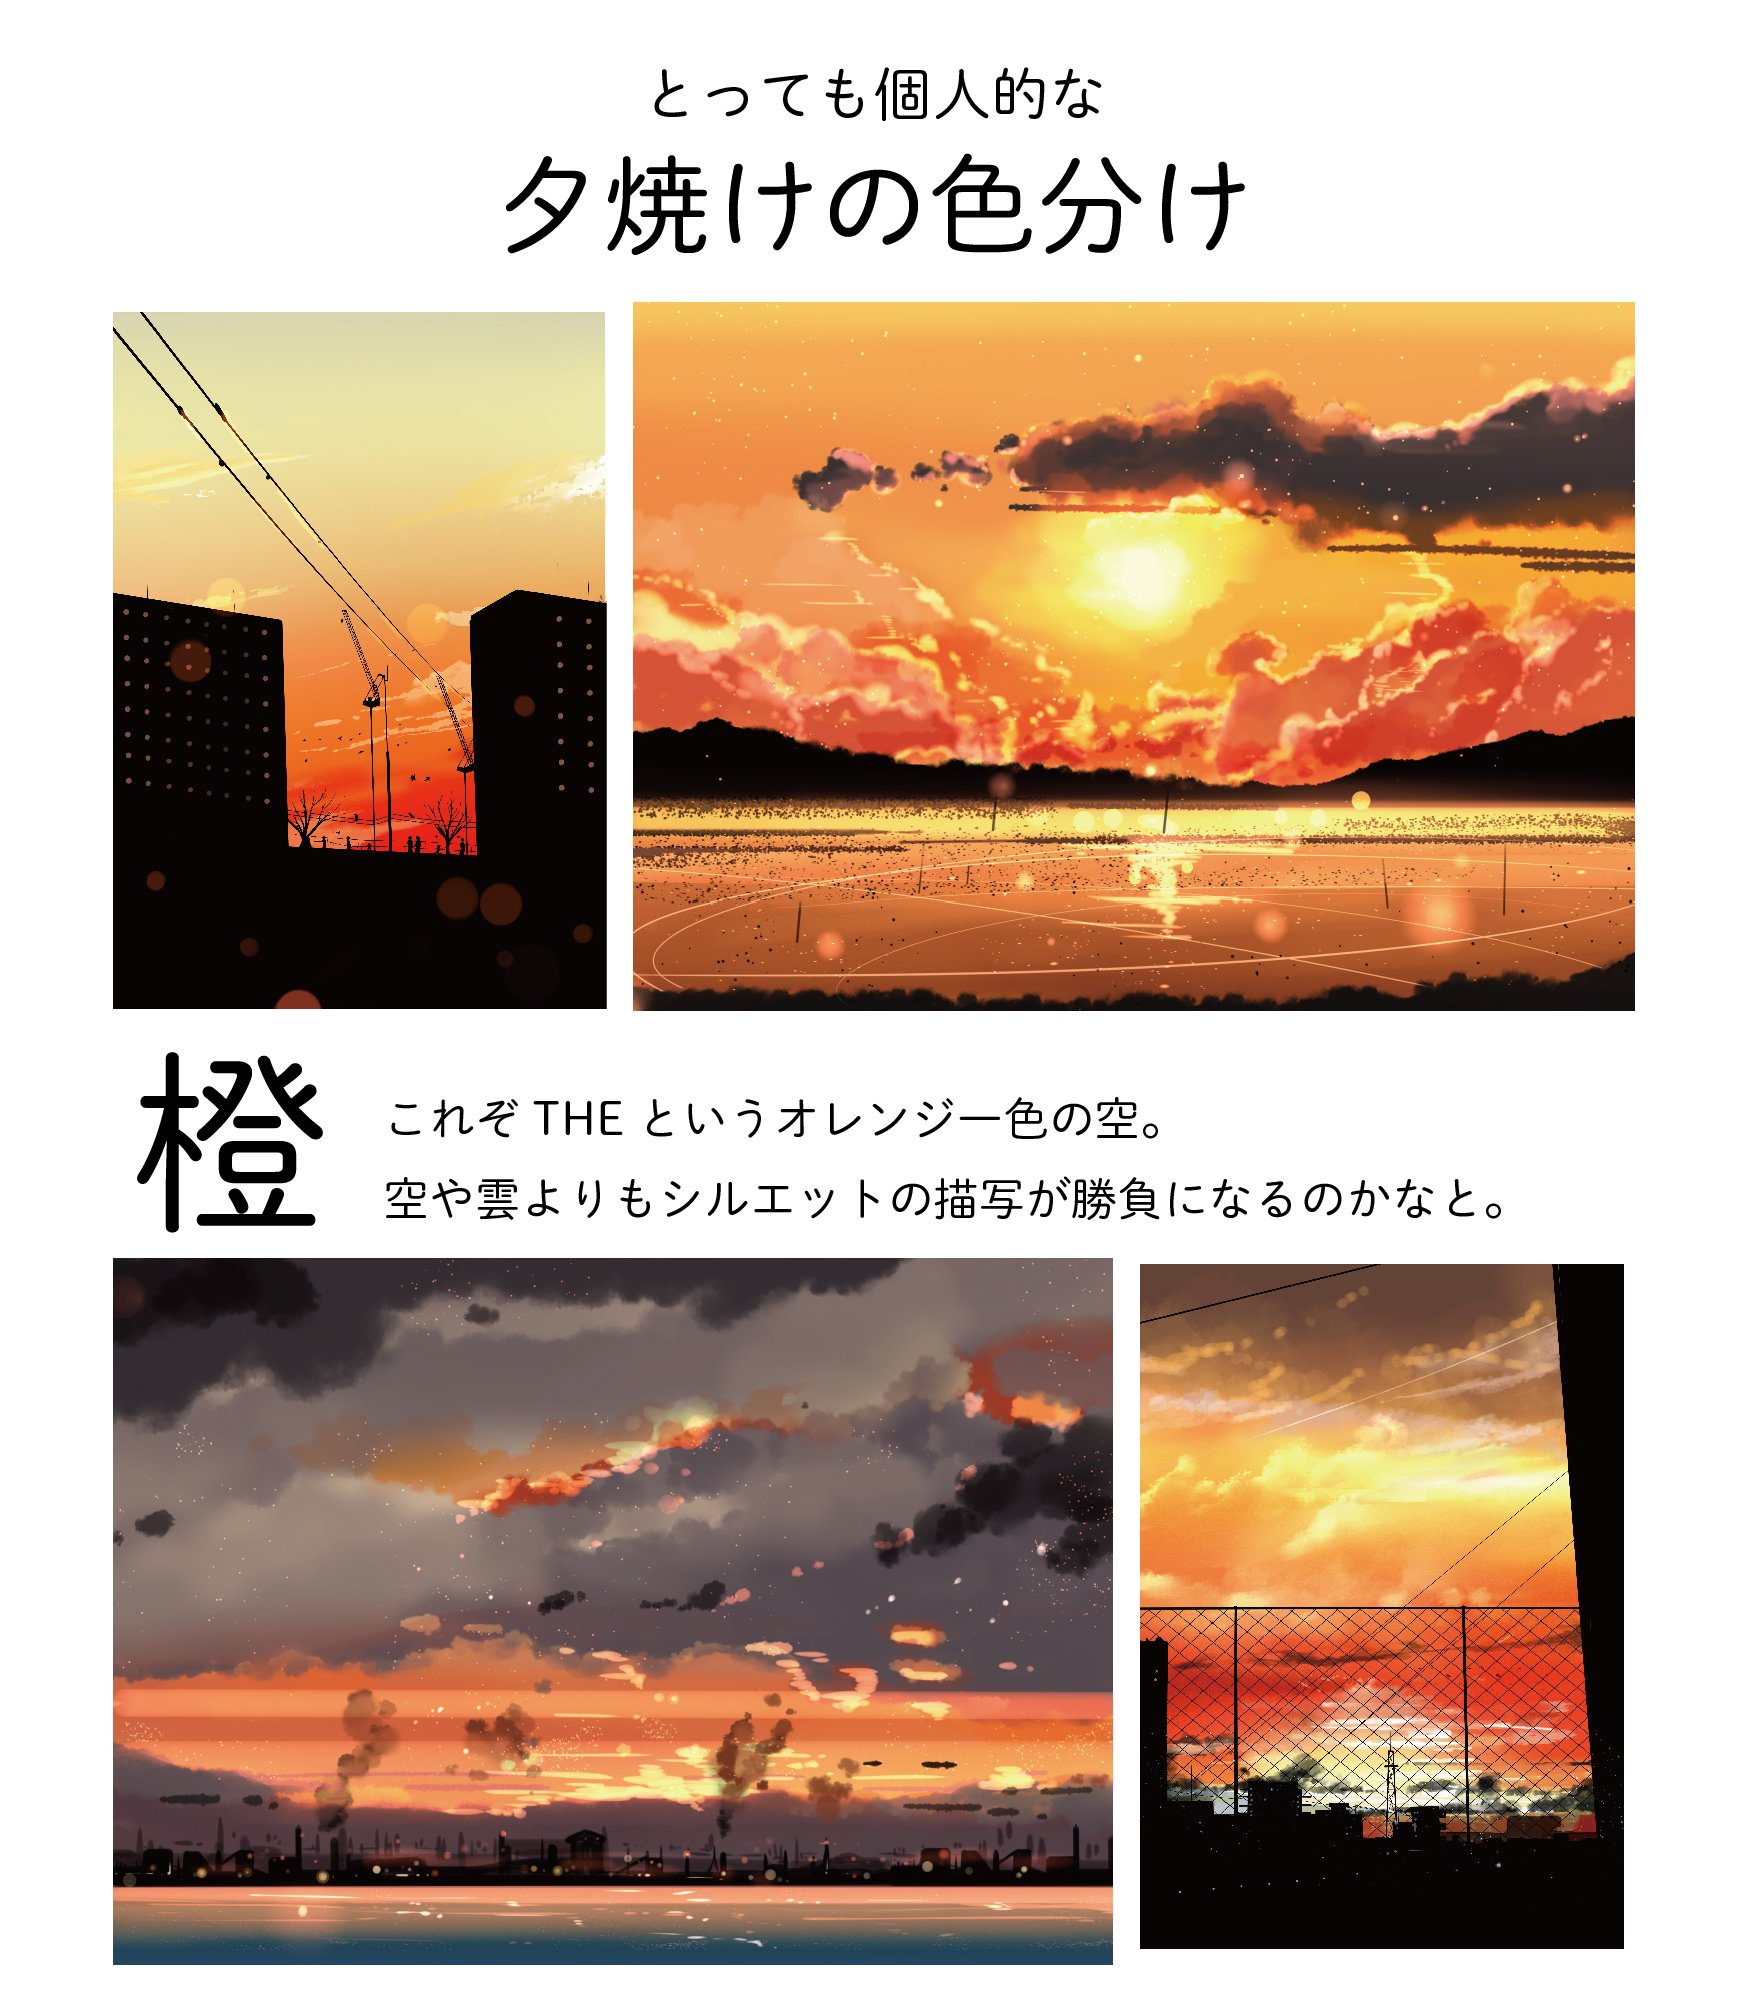 桜田千尋 ティア141 お42ｂ 自分の夕焼けのイラストを色ごとに分けてみました 夕焼けイラストは変化する空のグラデーション作るのが楽しいです 好きな空の色 ありますか 今後のグッズなどの参考にします T Co Prlupkct4f Twitter